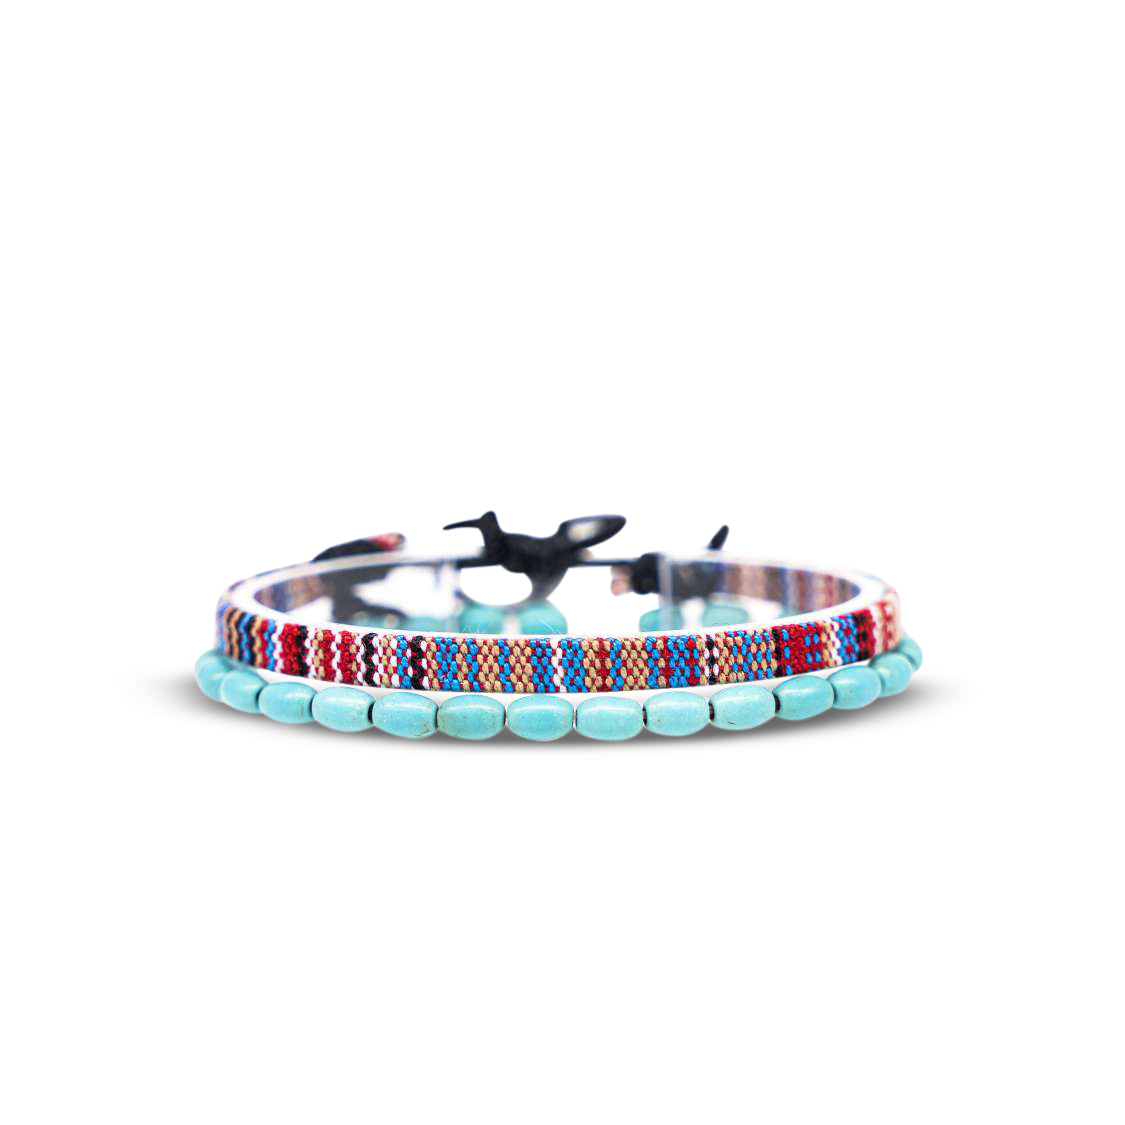 2x Boho Surfer Bracelet Men -  Multi + Turquoise Beads